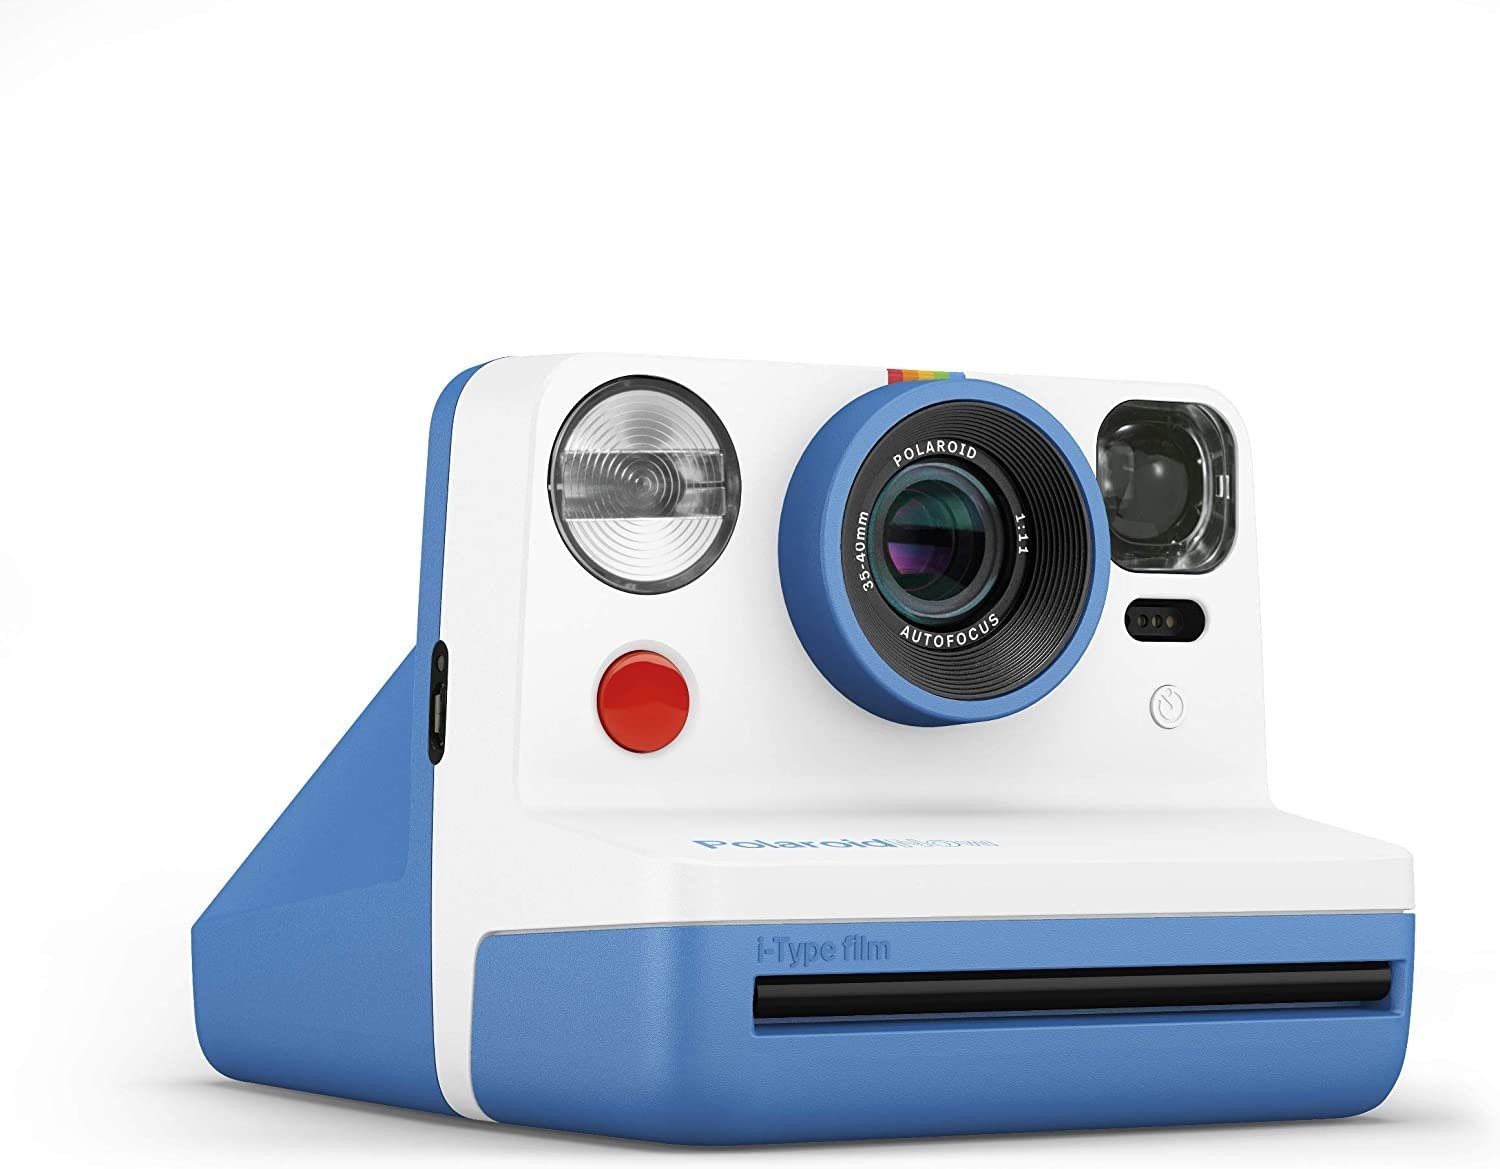 Sofortbildkamera - Sofortbildkamera NOW Polaroid Blau